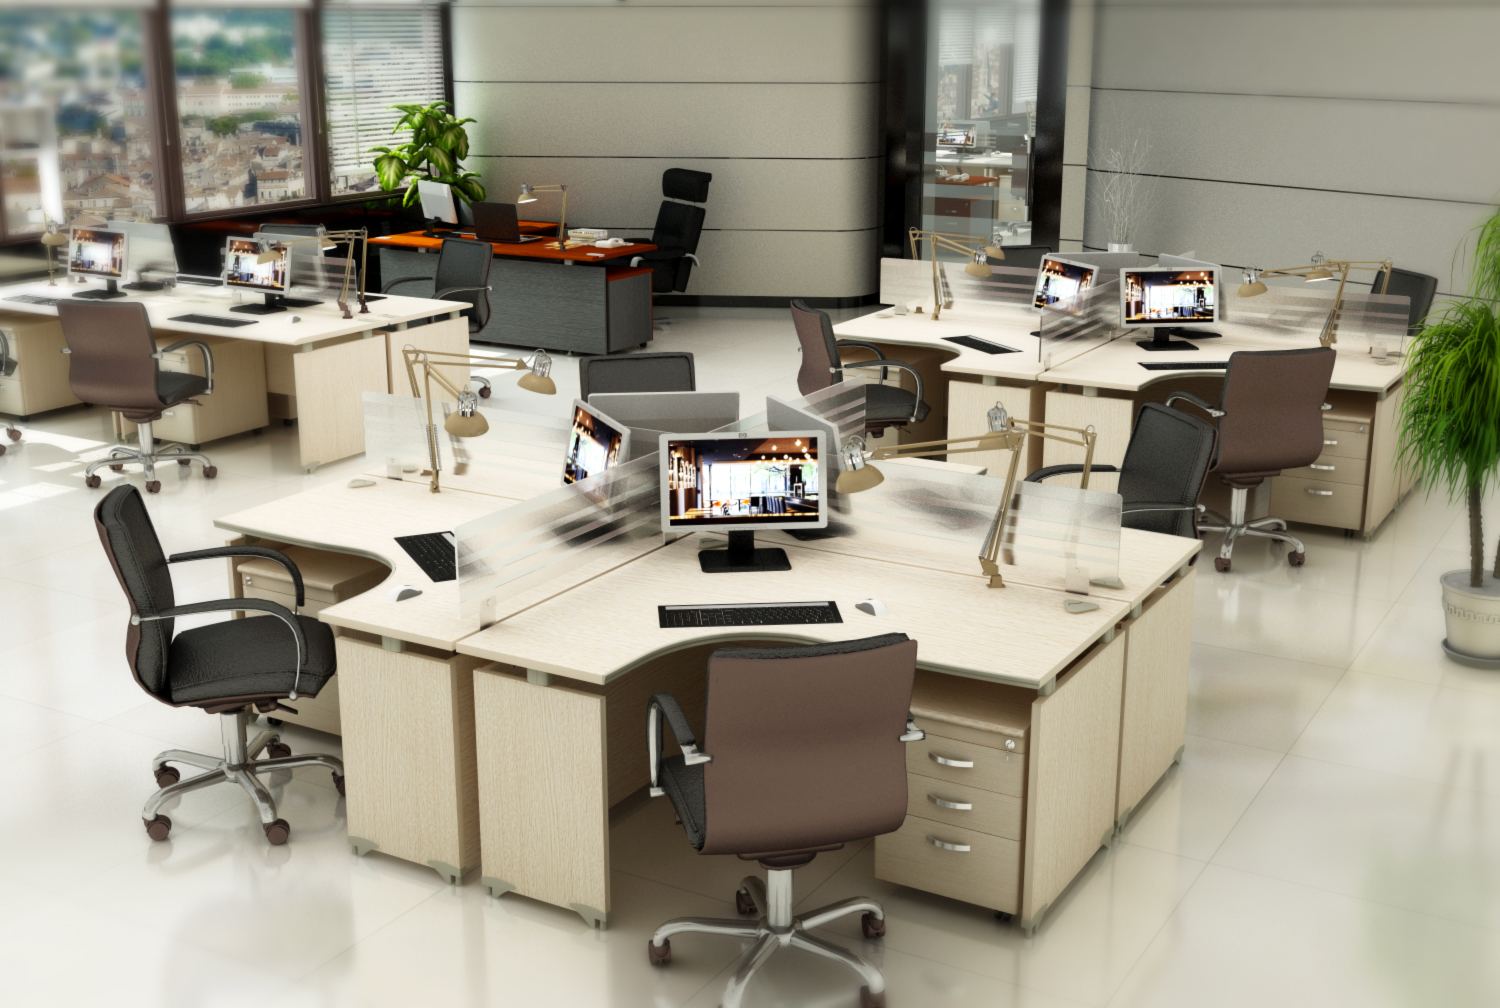 Thiết kế văn phòng nơi công sở có ảnh hưởng rất lớn đến năng suất lao động của nhân viên